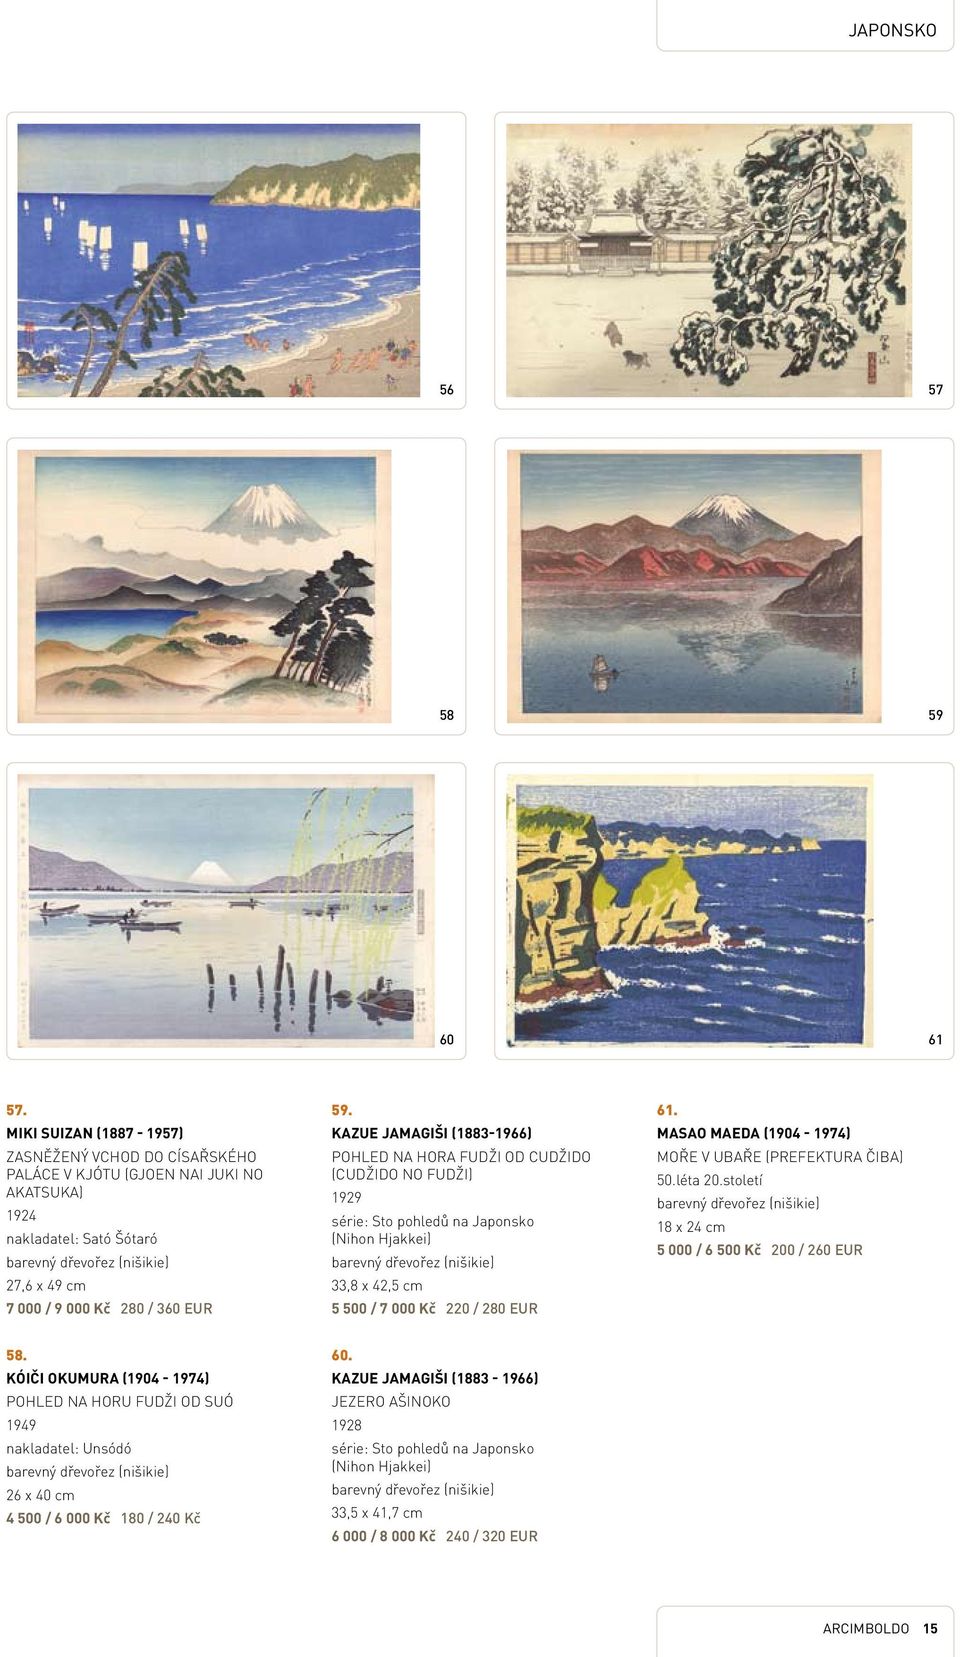 Kazue Jamagiši (1883-1966) Pohled na hora Fudži od Cudžido (Cudžido no Fudži) 1929 série: Sto pohledů na Japonsko (Nihon Hjakkei) 33,8 x 42,5 cm 5 500 / 7 000 Kč 220 / 280 EUR 61.